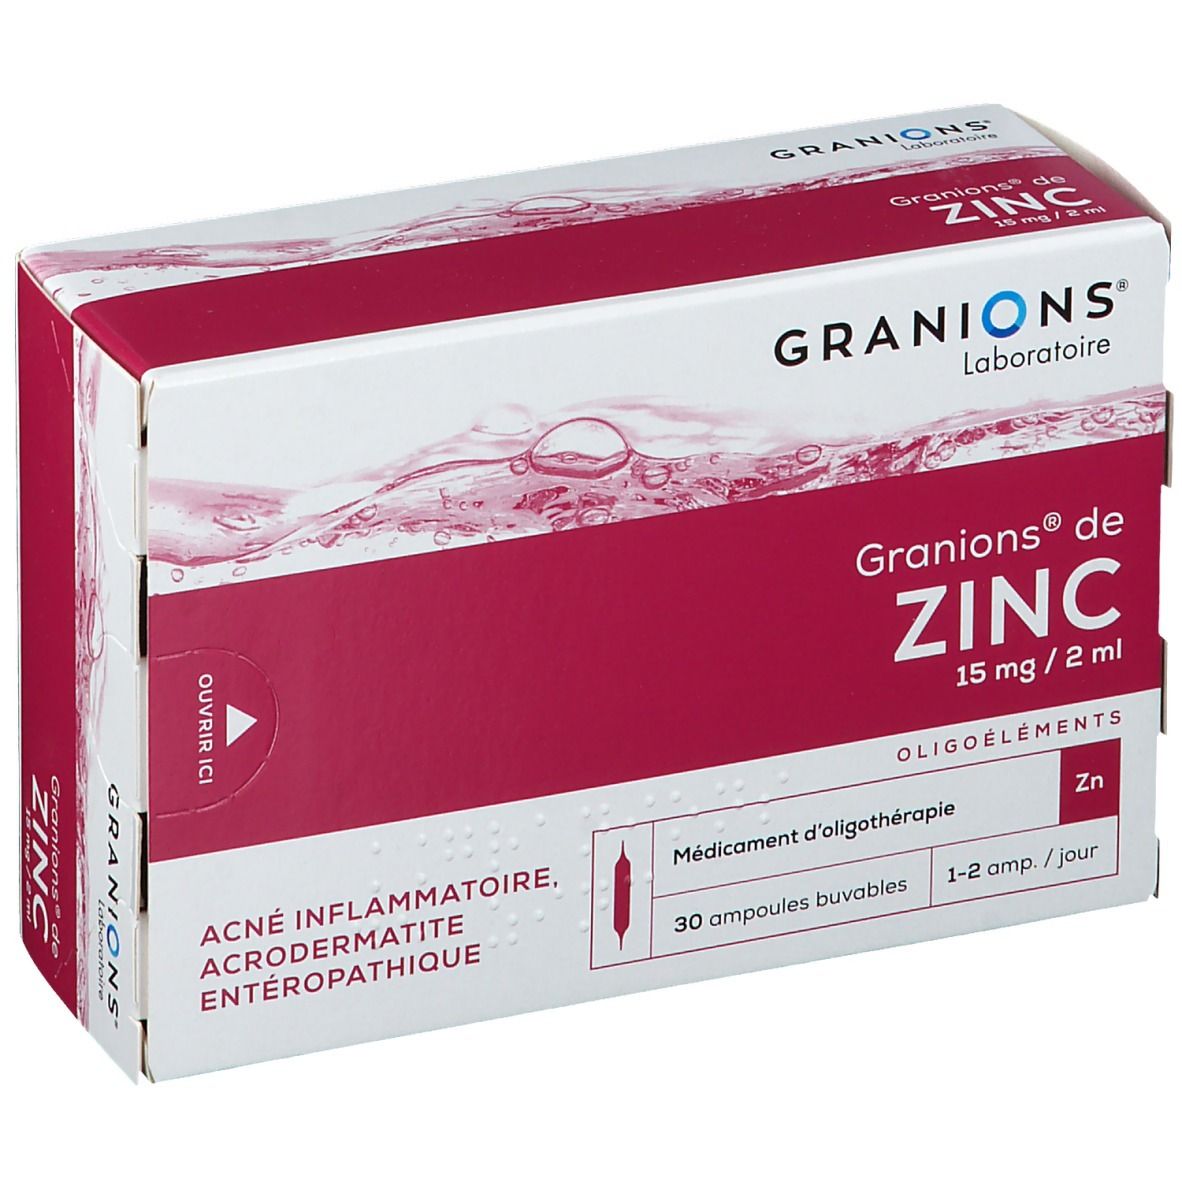 zinc laboratoire granions - granions de zinc bienfaits